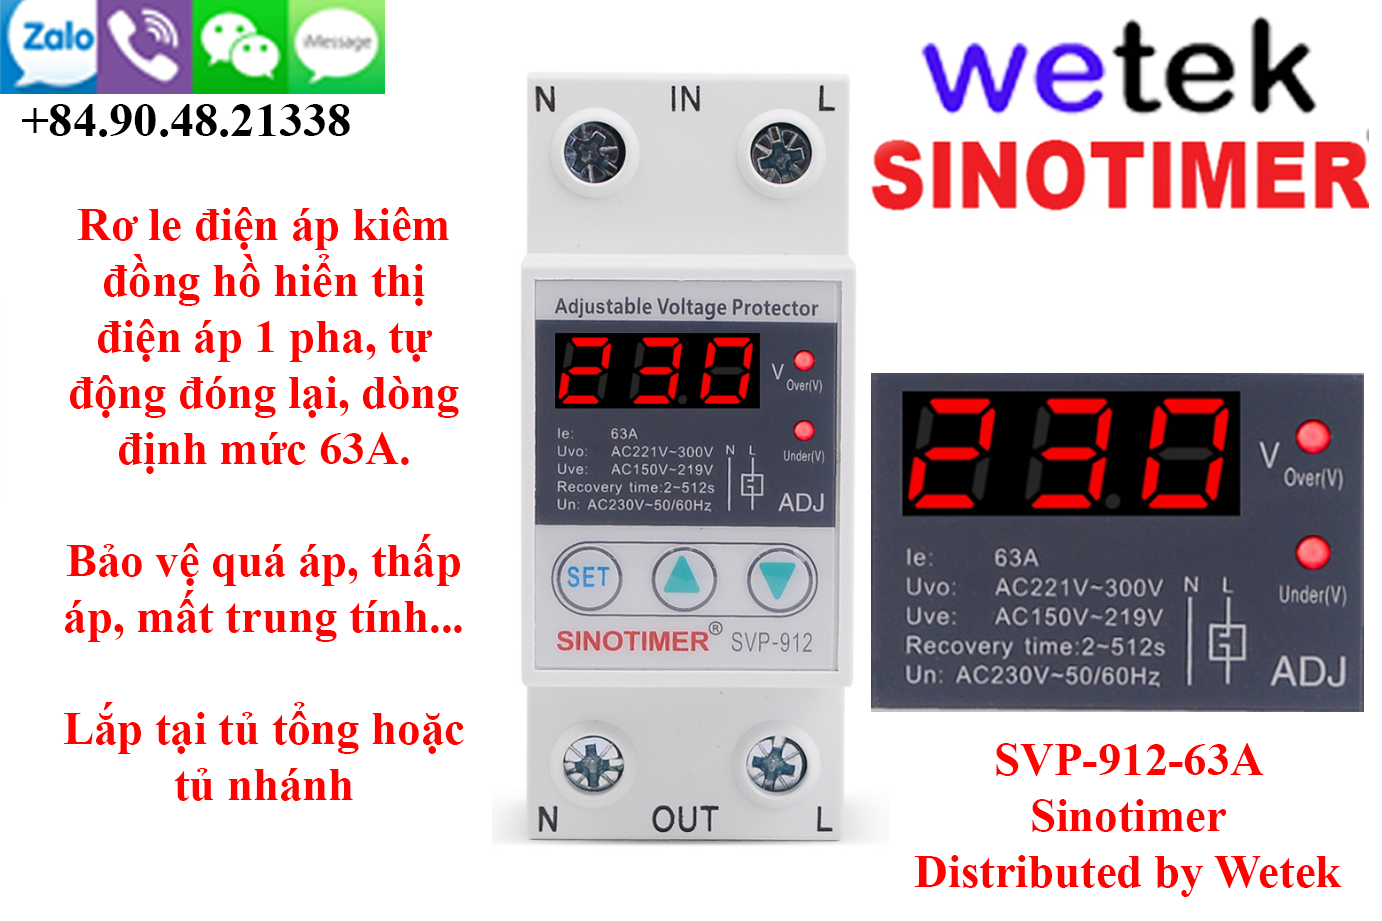 Rơ le điện áp điện tử hiện số, kiểu AT cài, Sinotimer SVP-912-63A